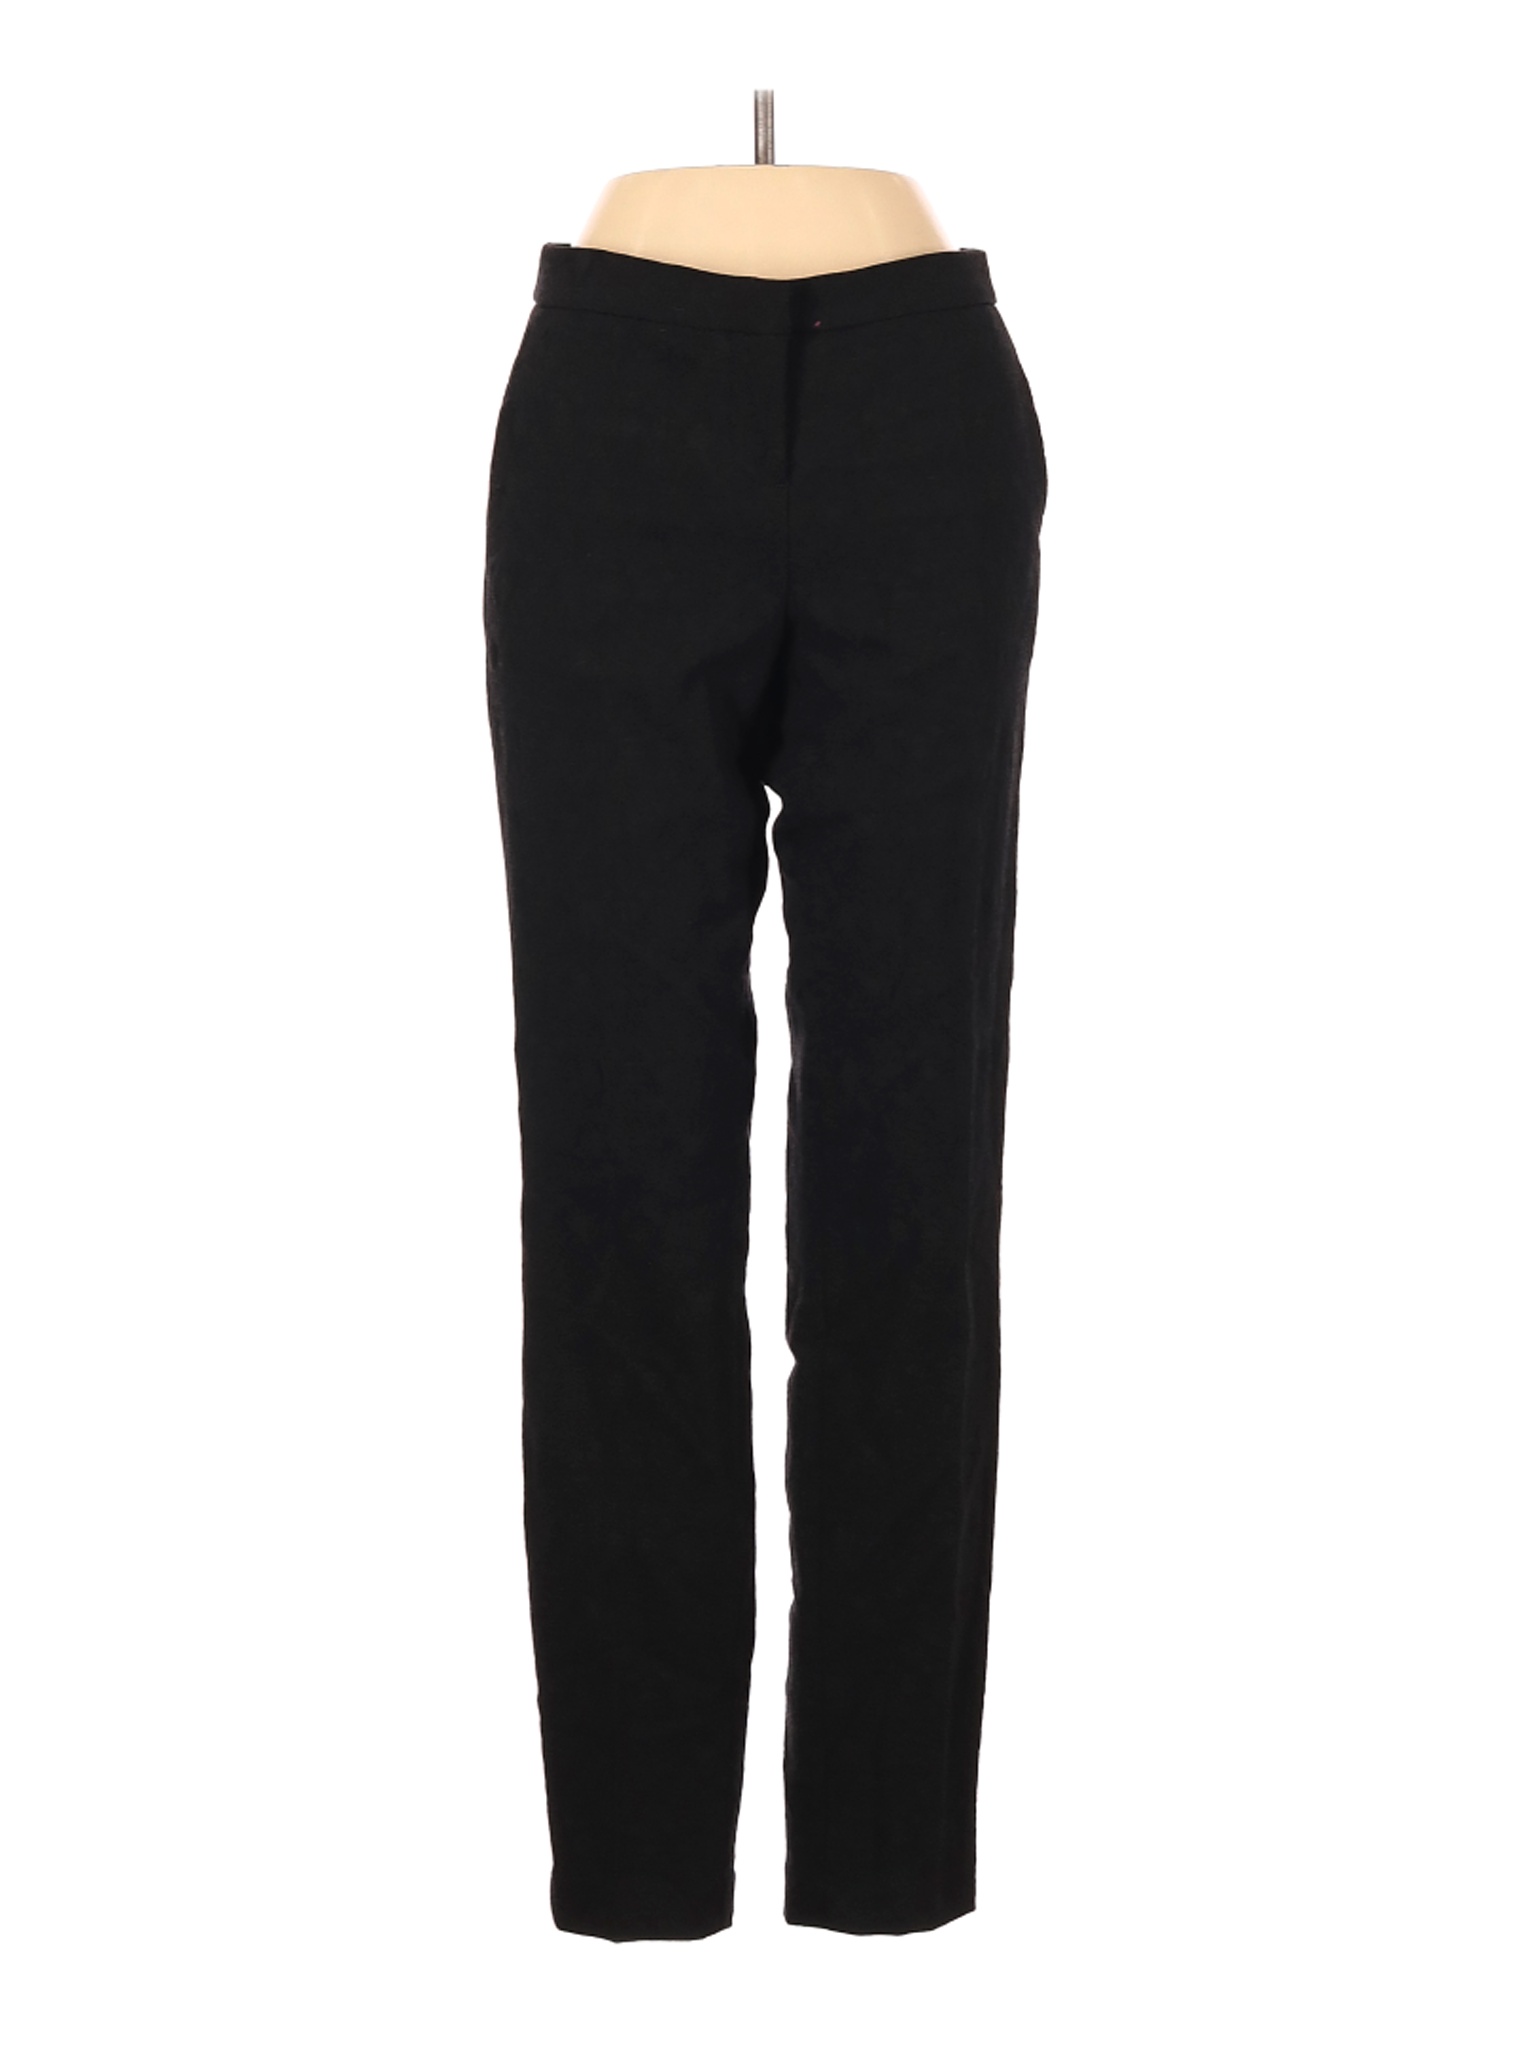 Kenar Women Black Dress Pants 4 | eBay